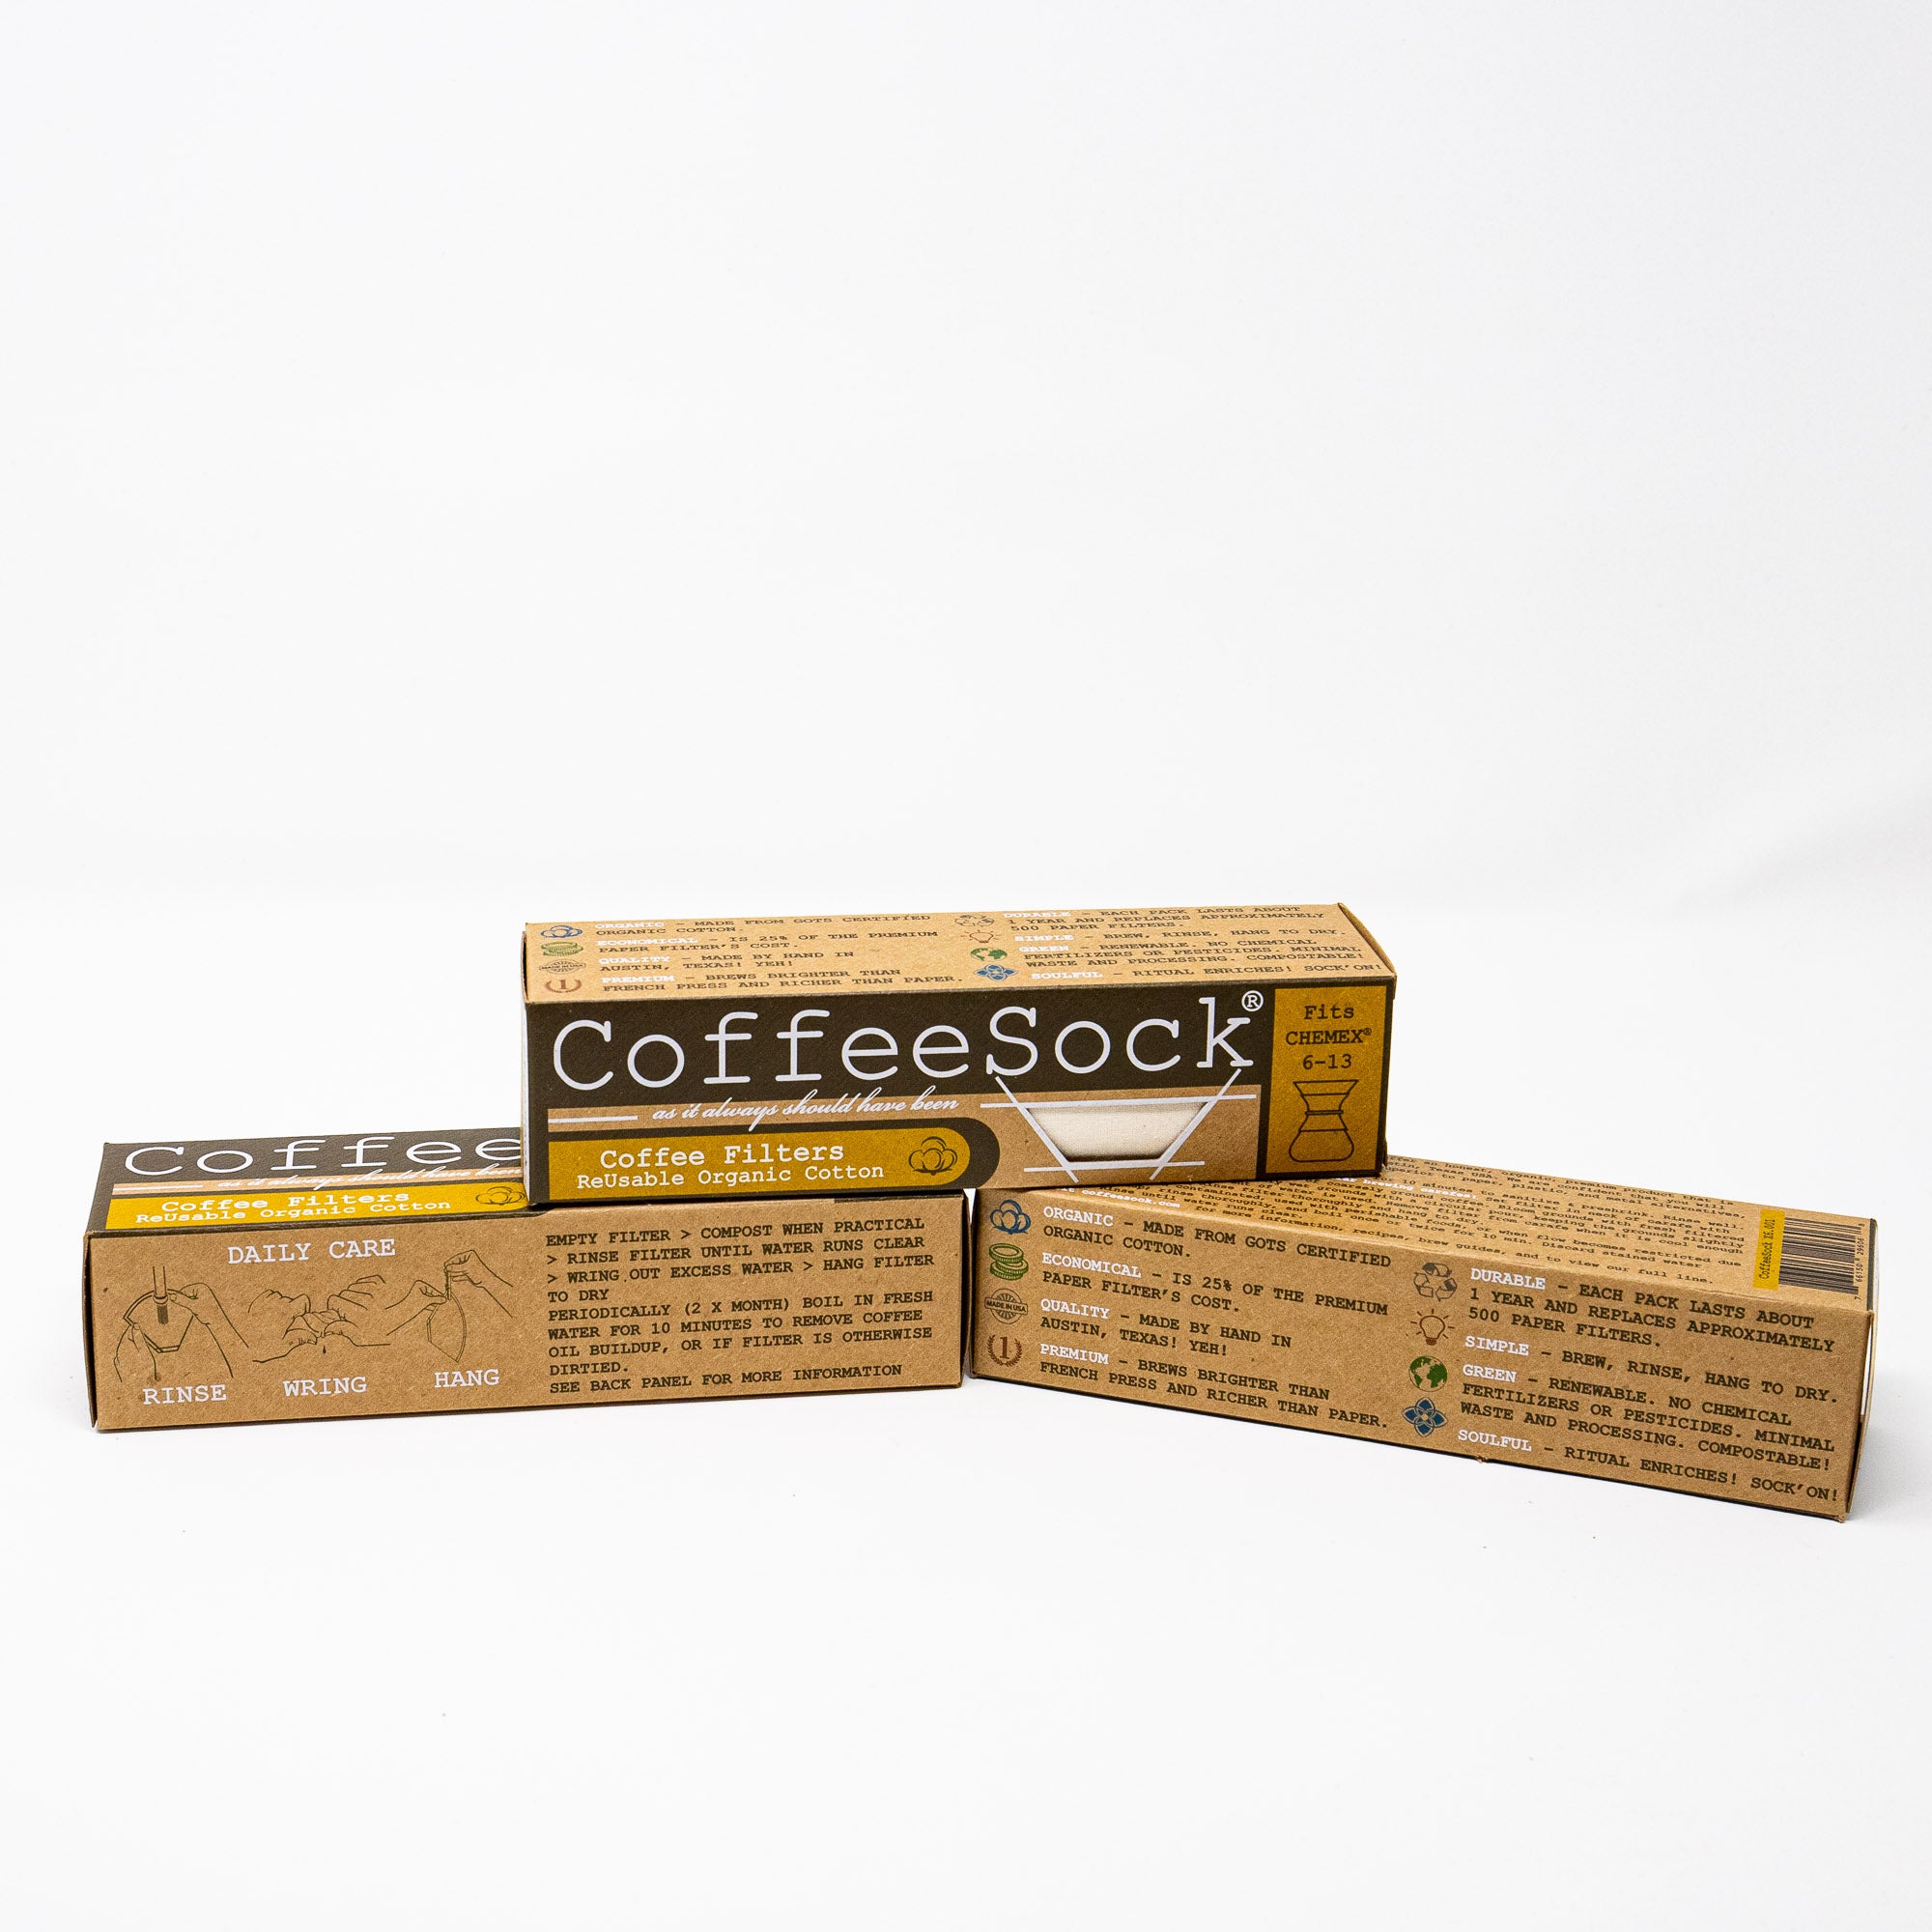 CoffeeSock Chemex 6-13 Cup